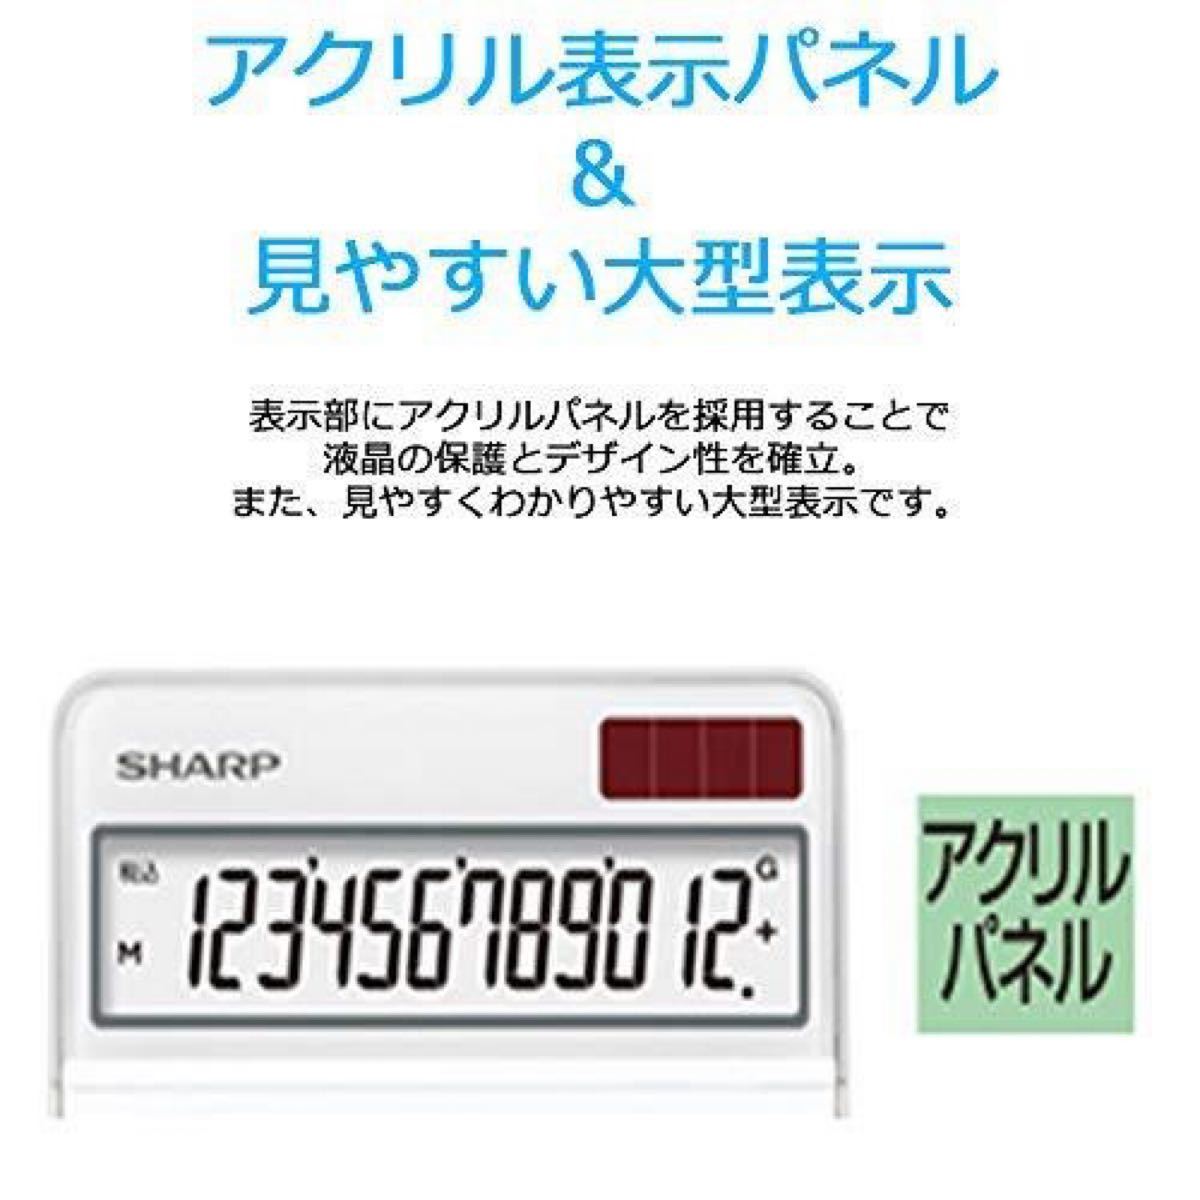 シャープ 電卓 シャープ ナイスサイズタイプ 10桁 EL-N431-X